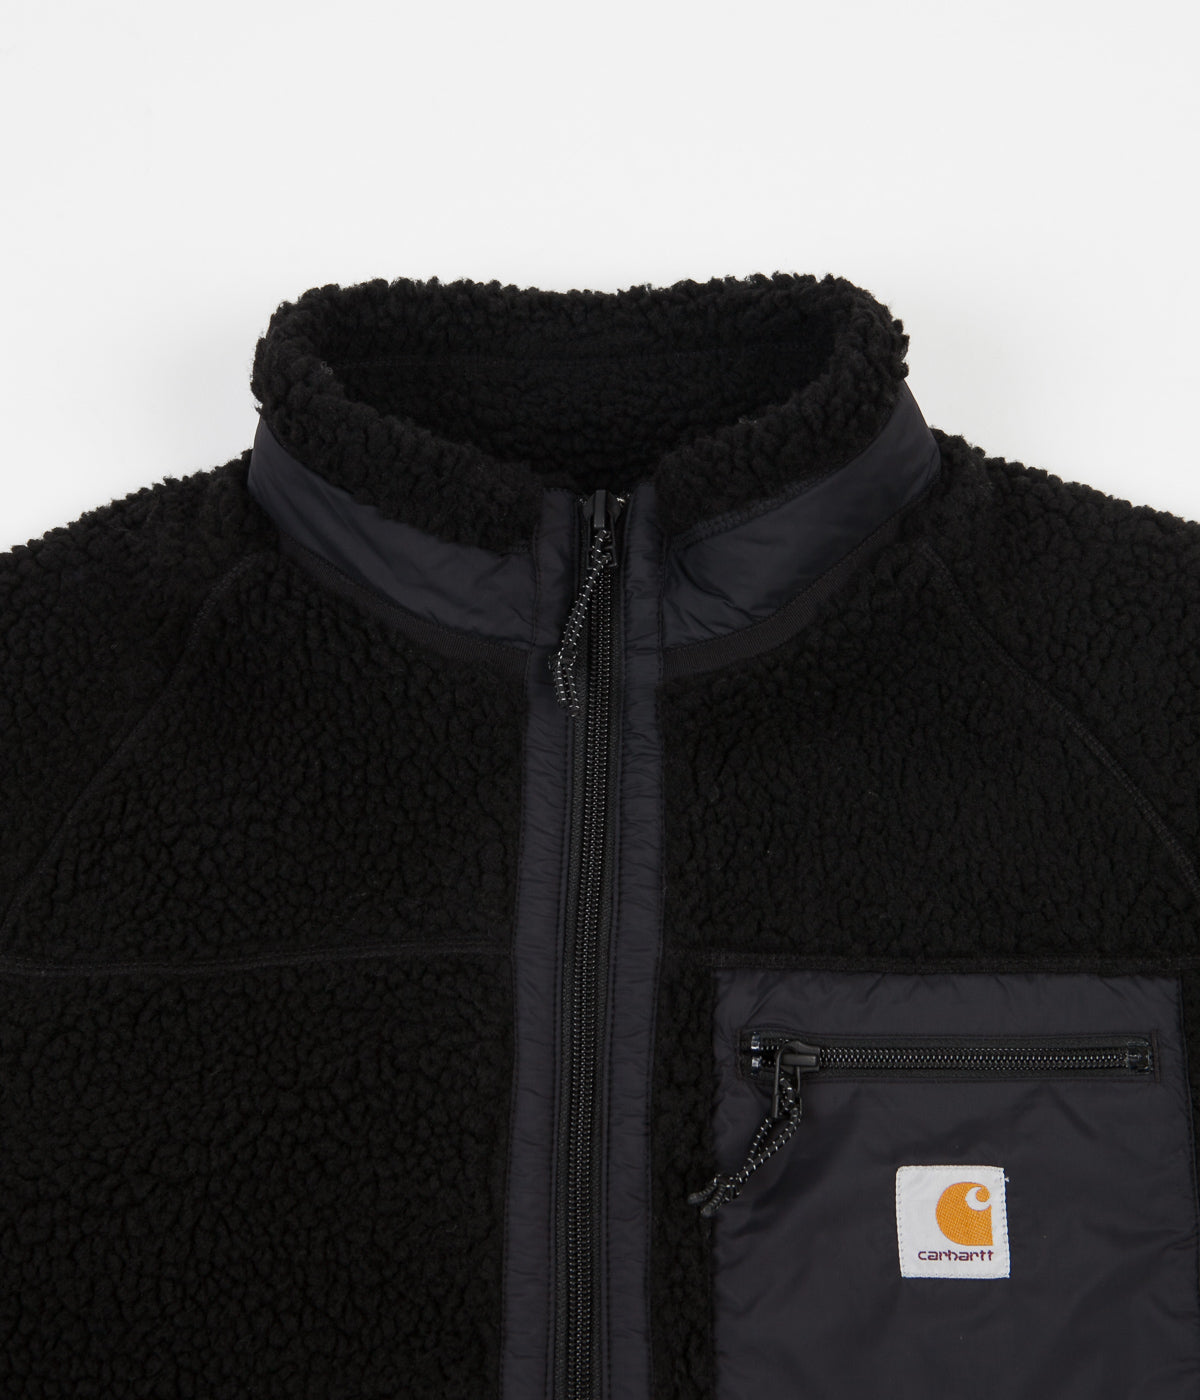 Carhartt Prentis Liner Jacket - Black | Flatspot